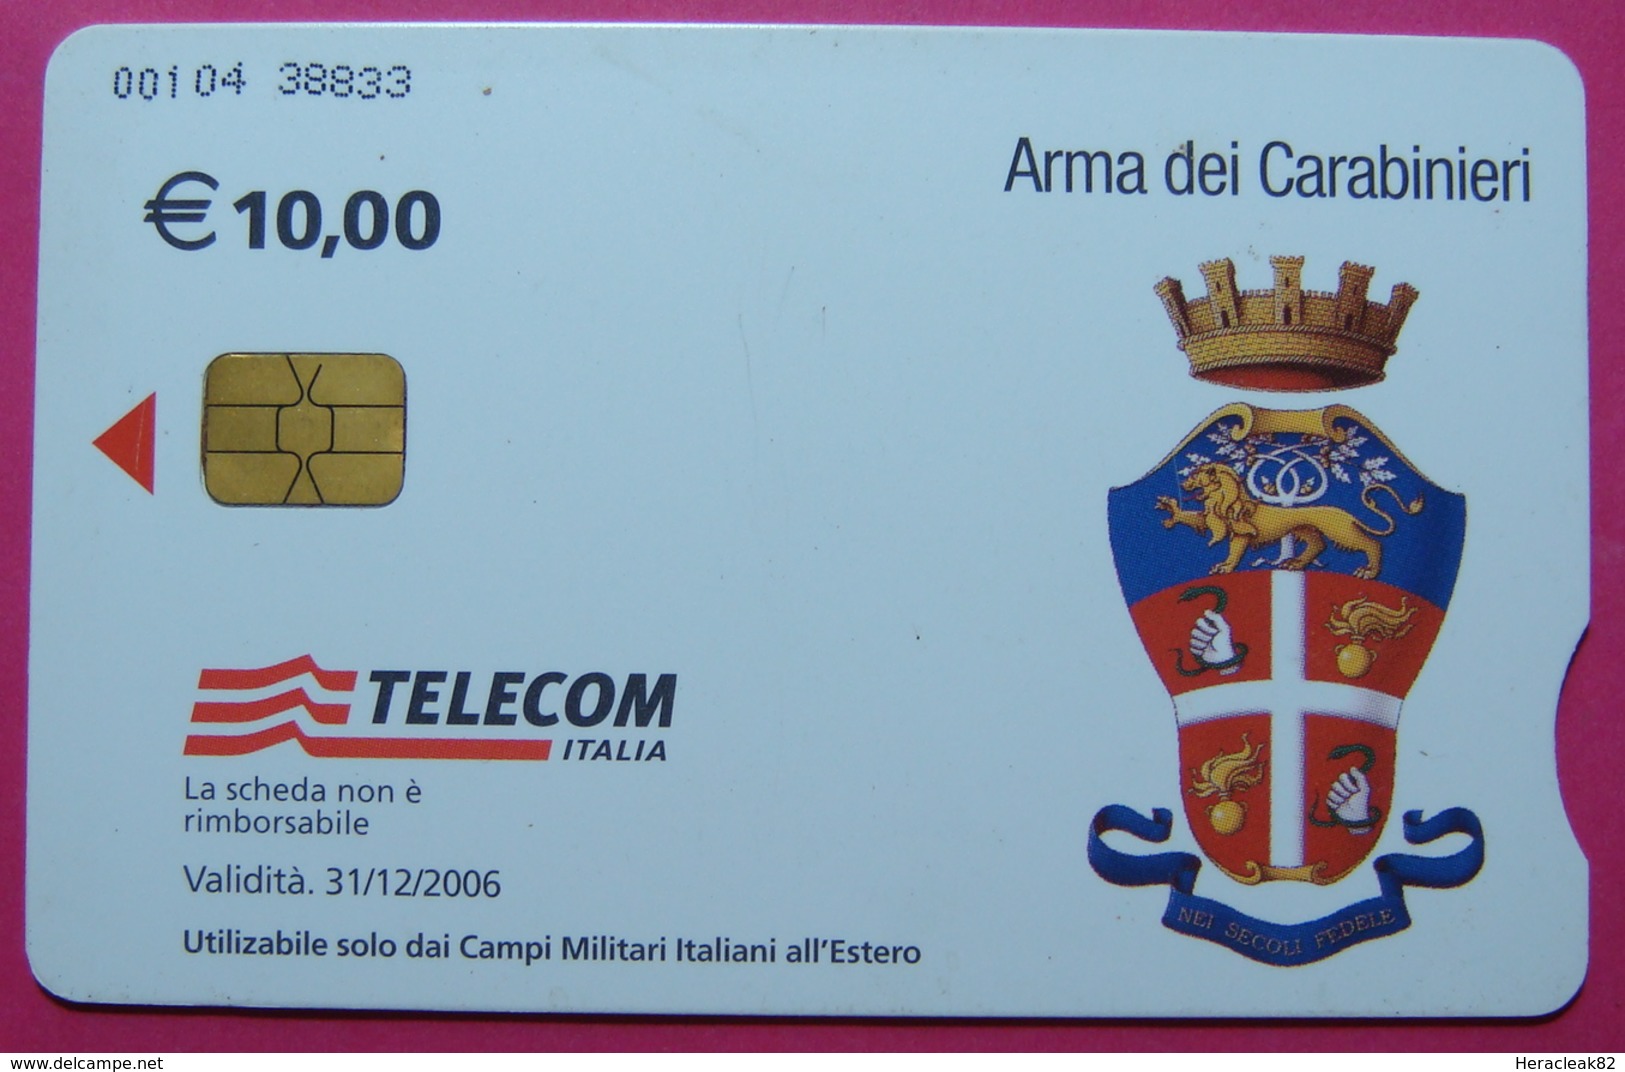 2 Edition KFOR-NATO Kosovo Italian Army In IRAQ CHIP Phonecard, 10 Euro. TELECOM ITALIA, *Arma Dei Carabinieri, Doctor* - Irak